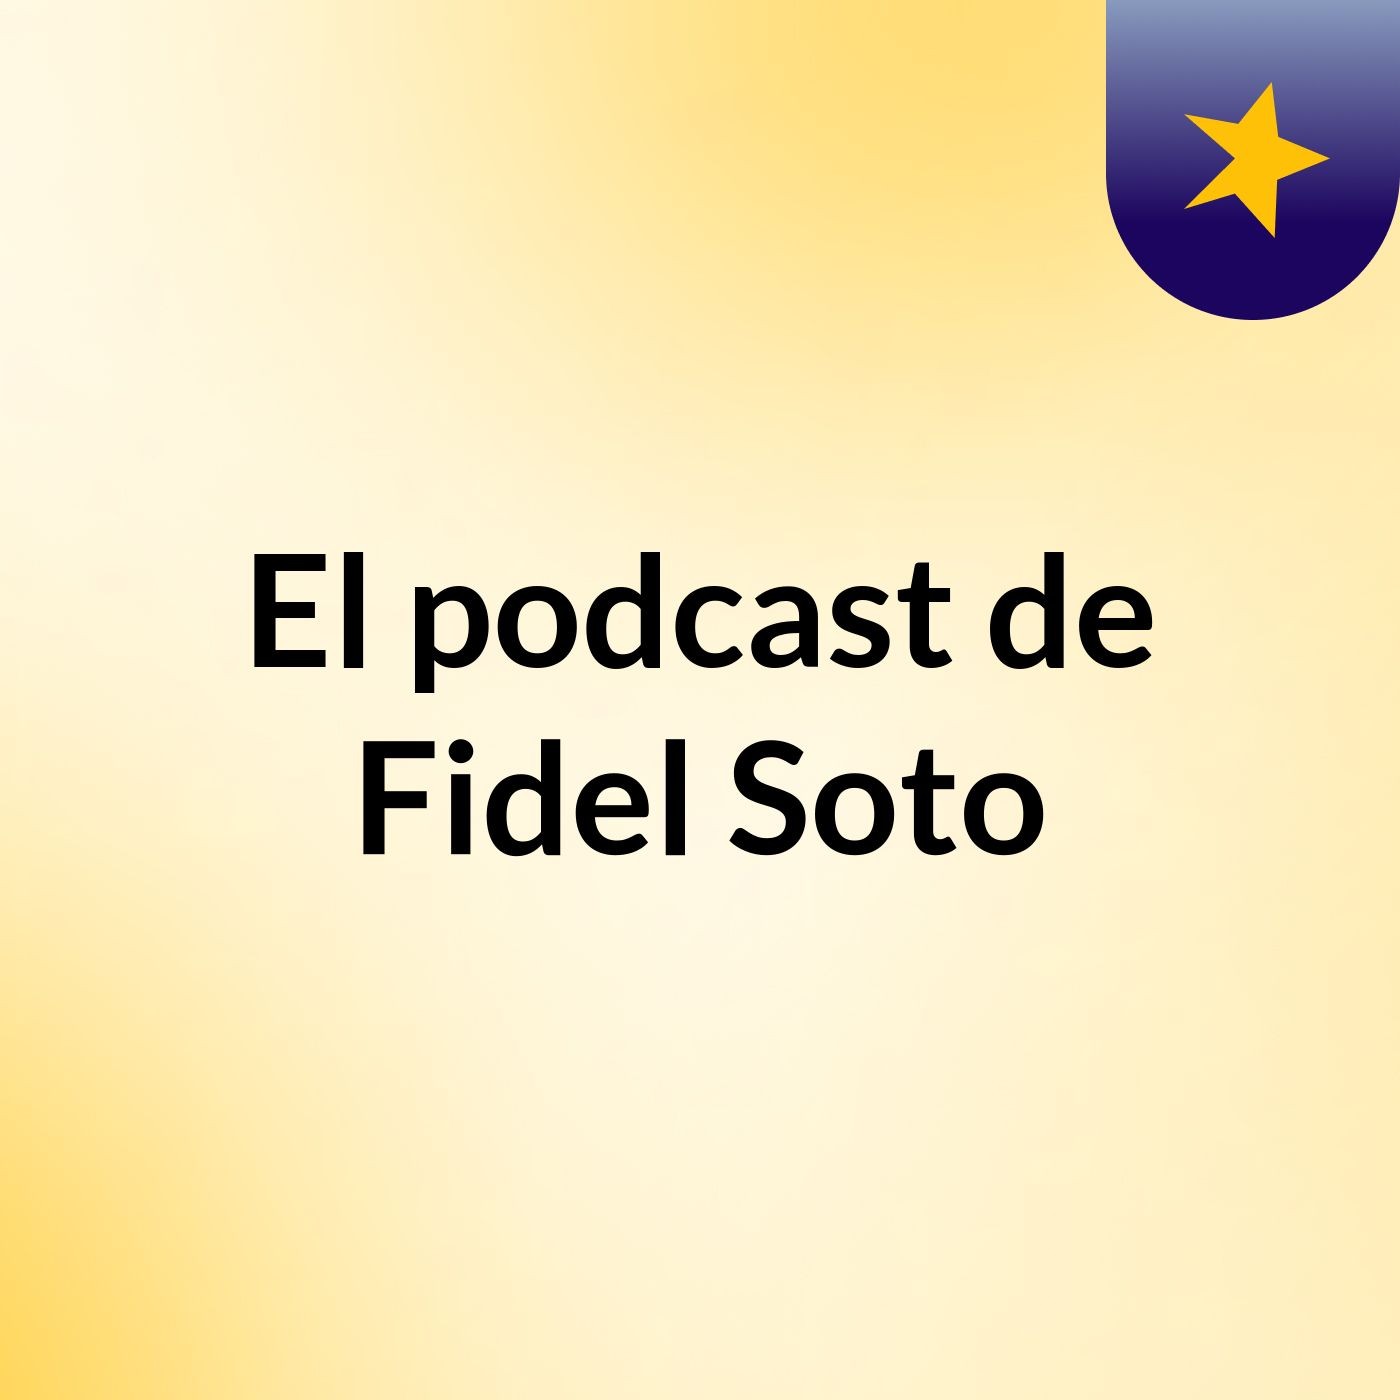 El podcast de Fidel Soto